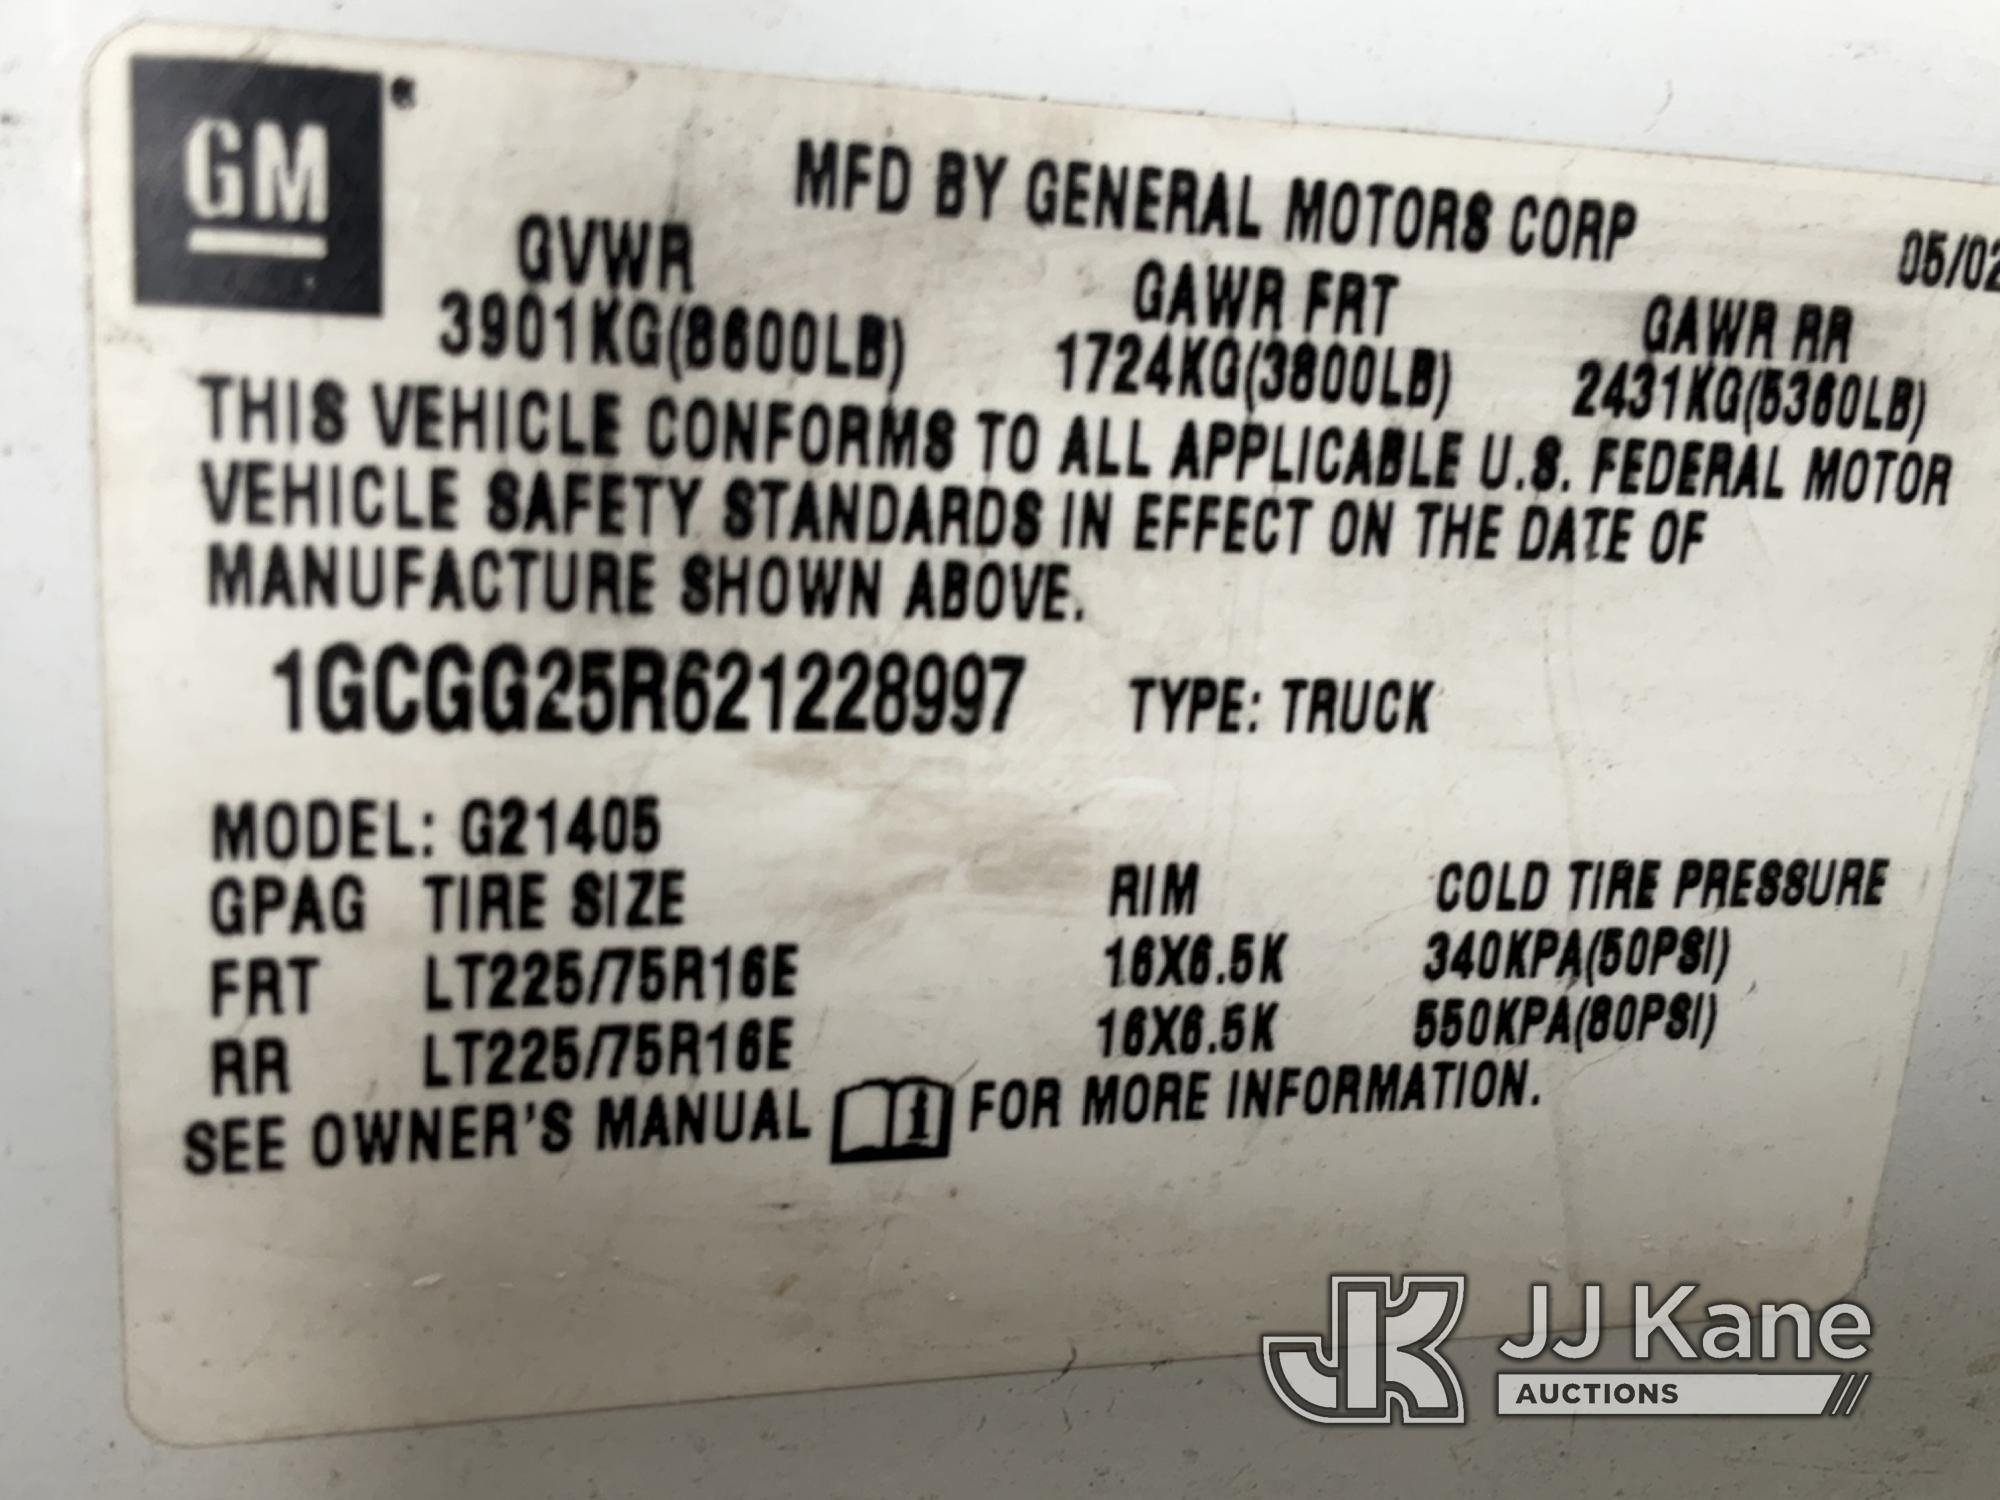 (Jurupa Valley, CA) 2002 Chevrolet Express G2500 Cargo Van Runs & Moves, Paint Damage, Rust Damage